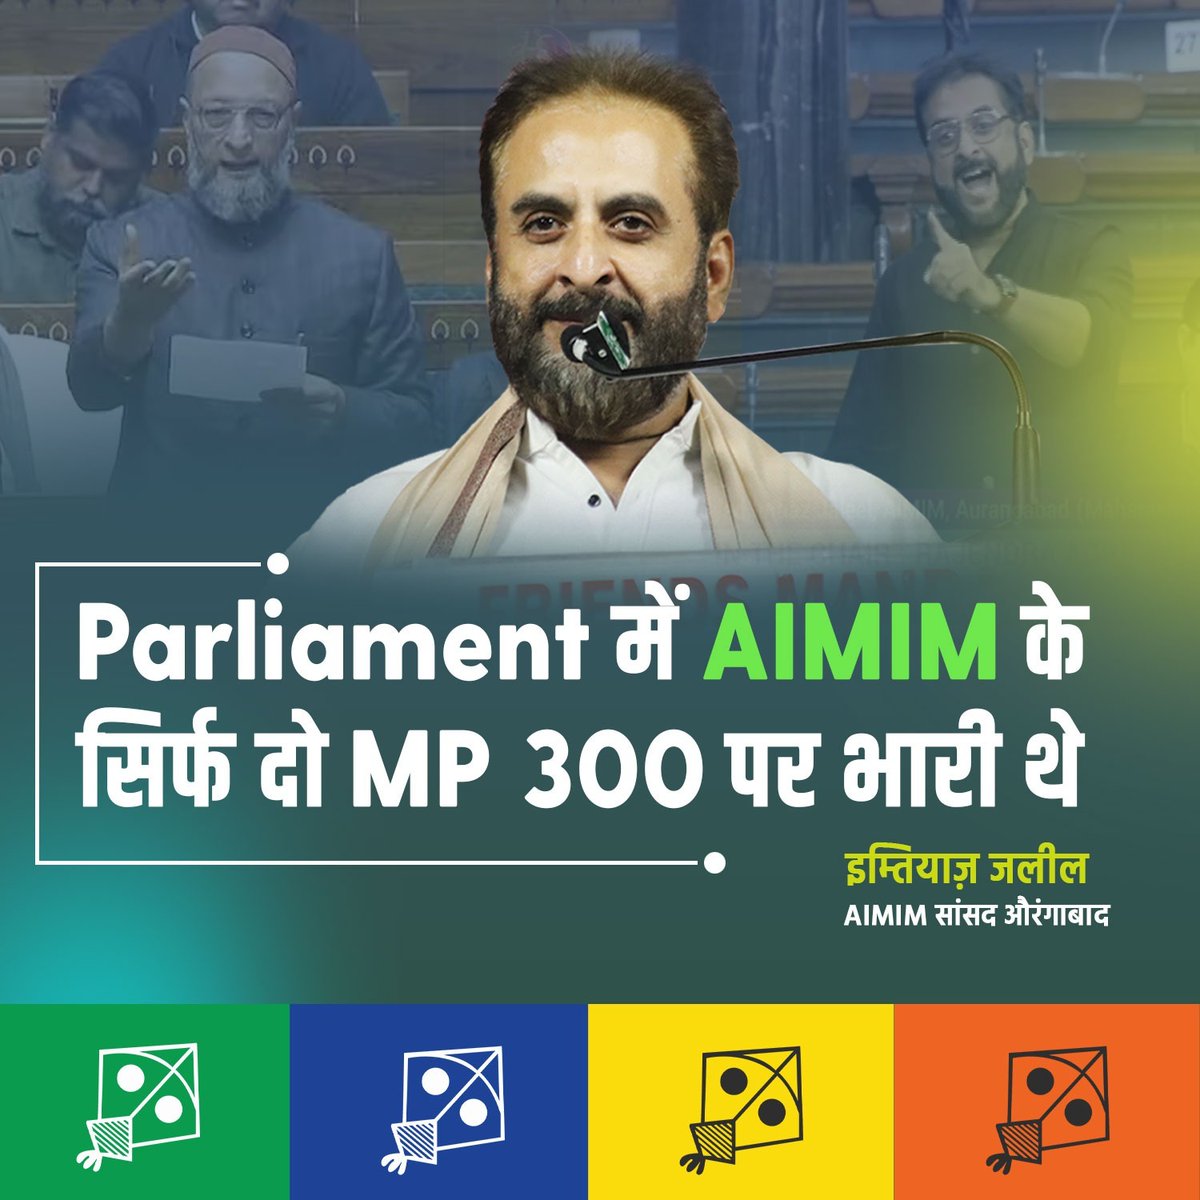 Parliament में AIMIM के दो MP 300 पर भारी थे - @imtiaz_jaleel 

*#AIMIM #ImtiazJaleel #majlis #parliamenthouse #MP #LokSabhaElection2024 #VoteForKite #13May #india*